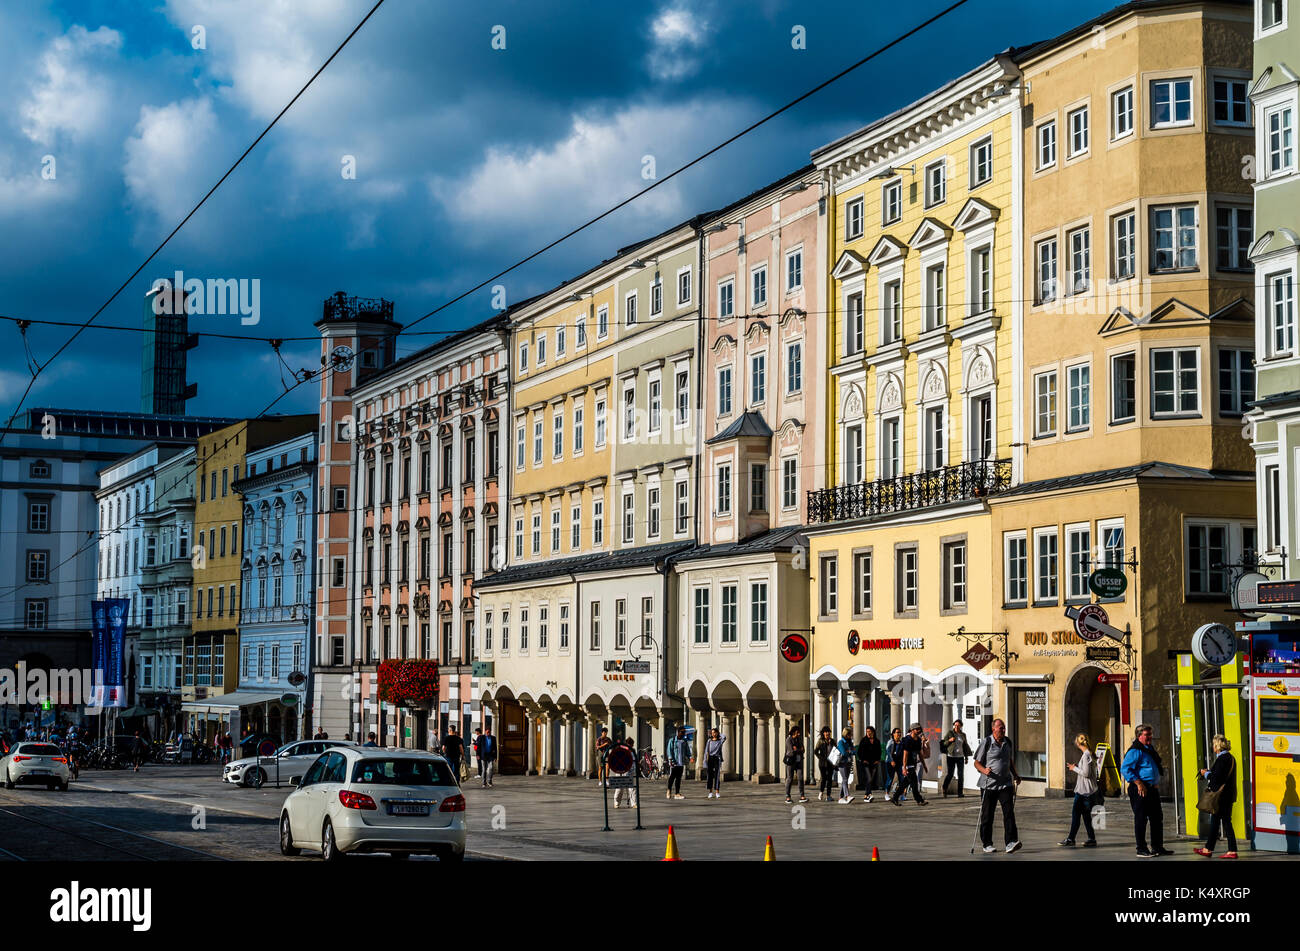 Lugar de interés de Linz, Austria, con contraste en el colorido edificio exterior o fachada arquitectónica, el hogar de las personas capturadas en su vida diaria Foto de stock